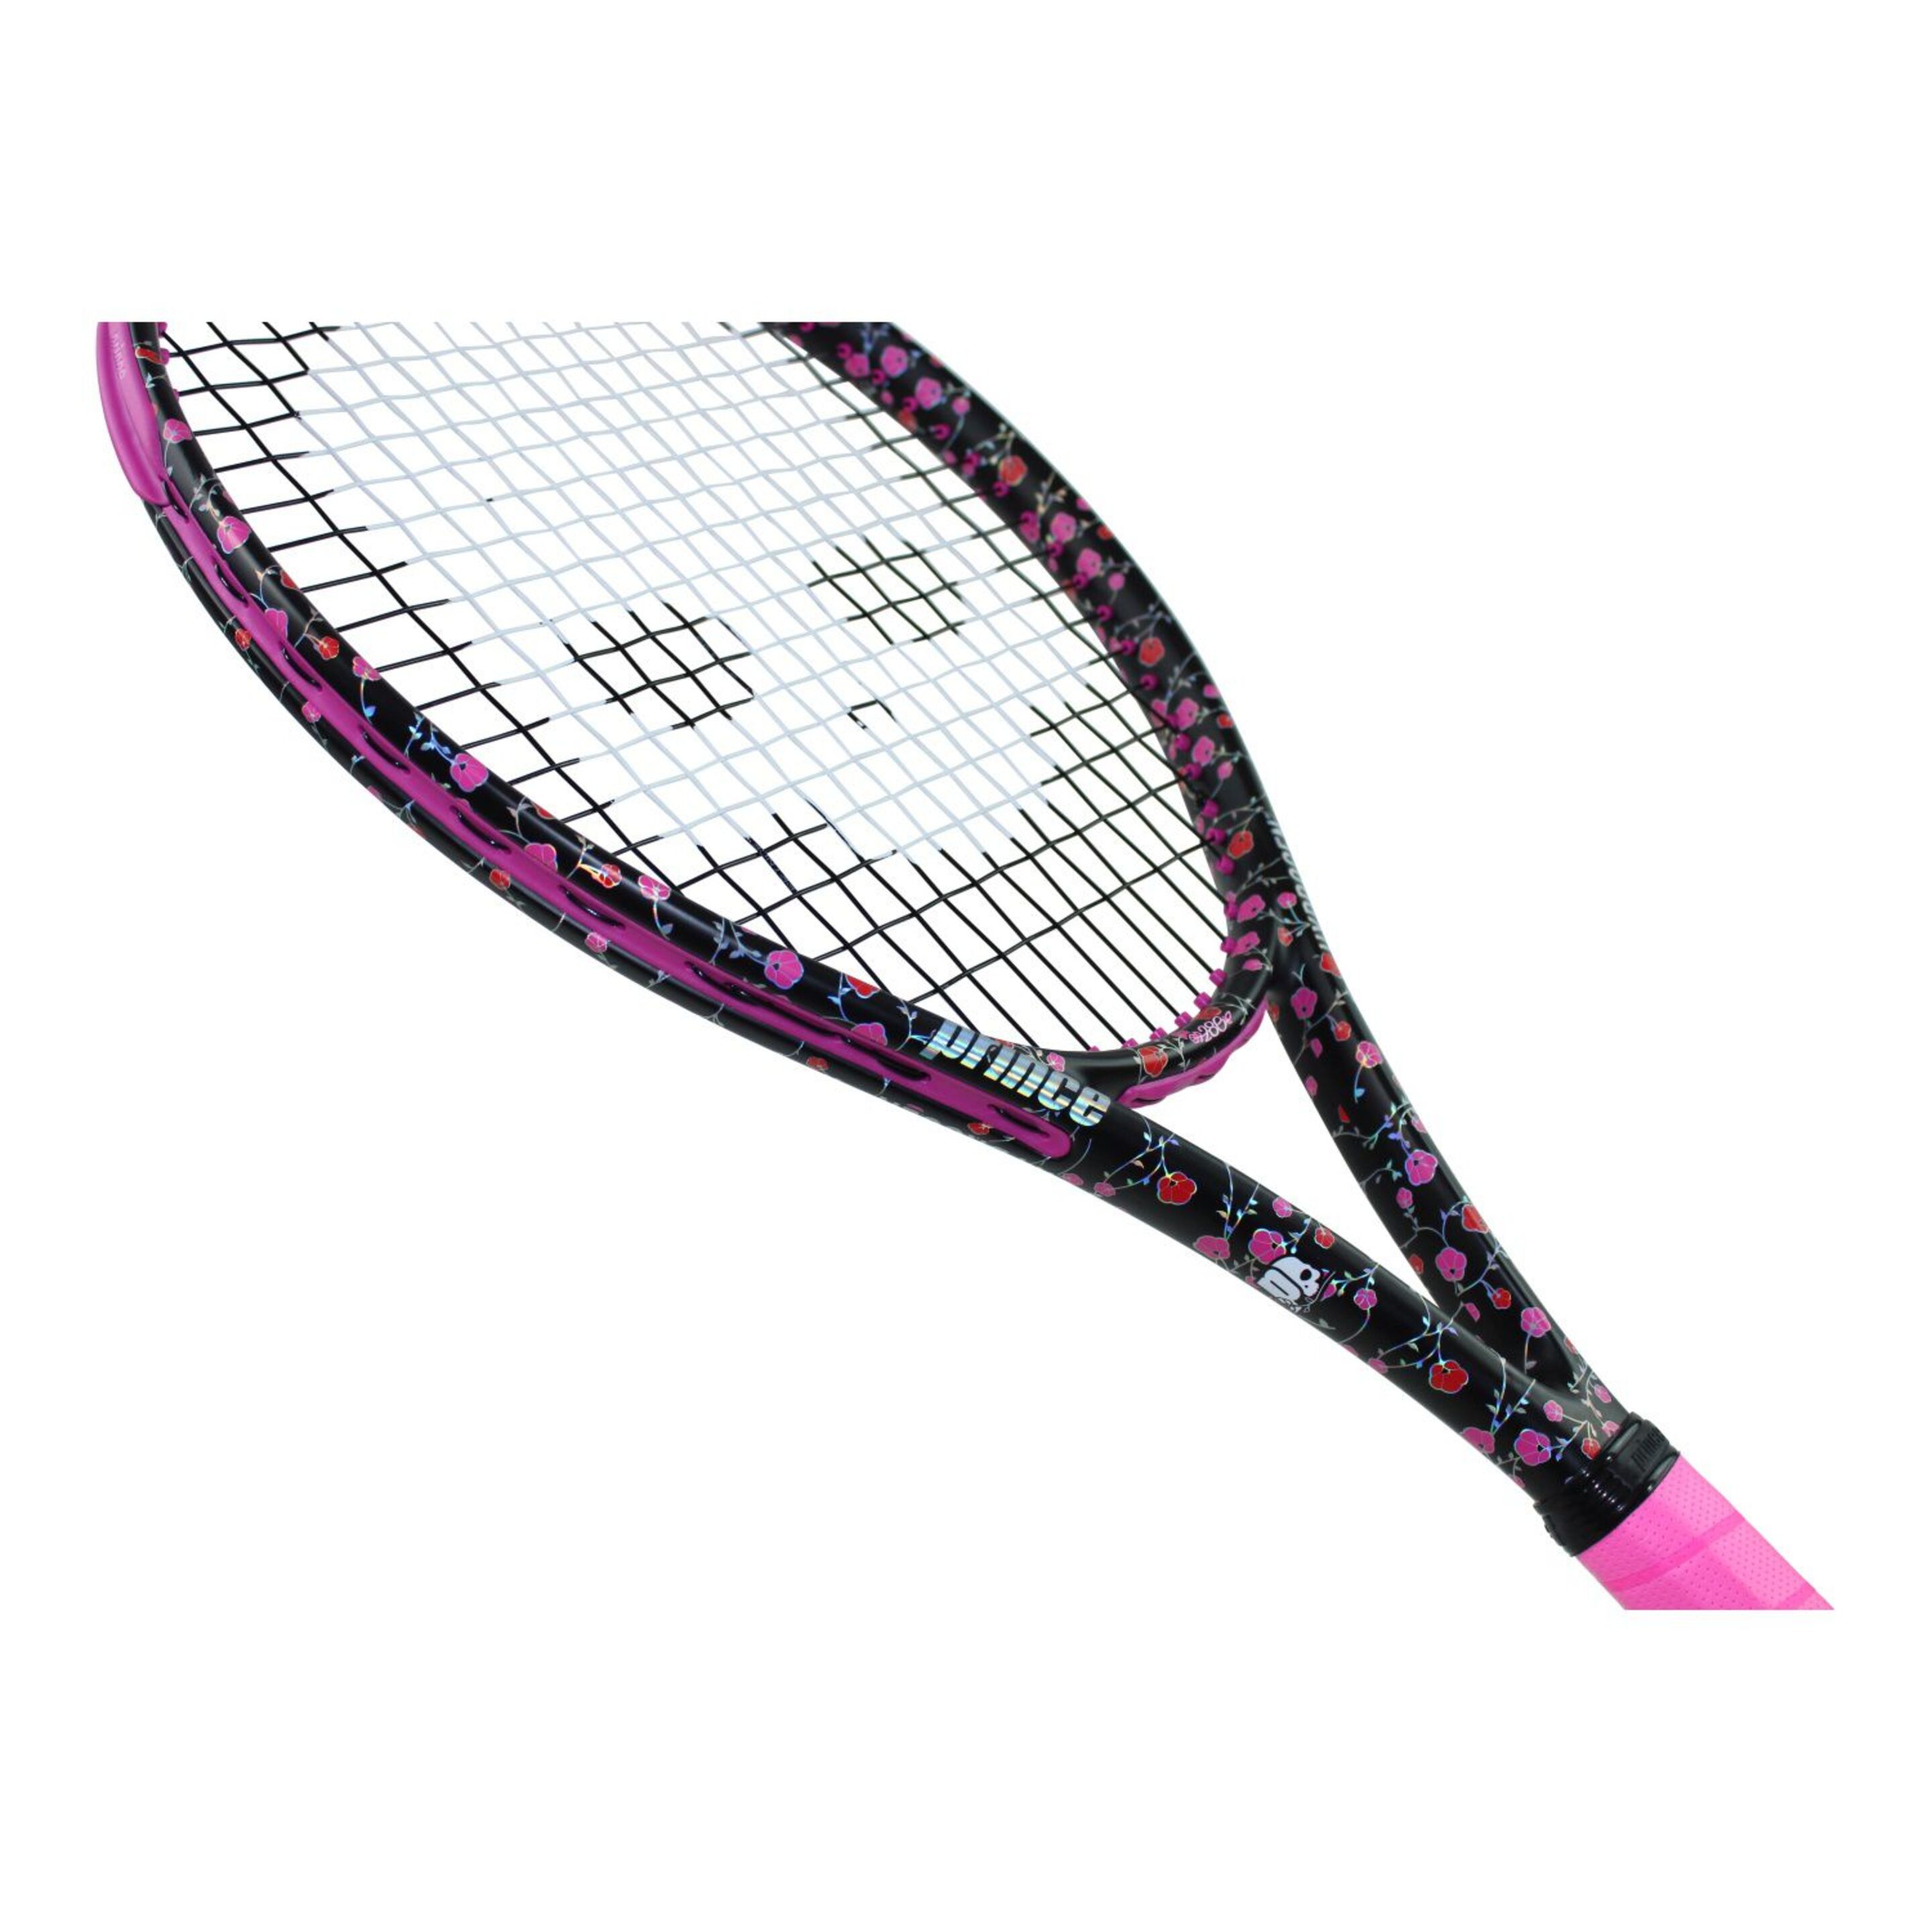 Raqueta De Tenis Prince  Mary 280 G (sin Encordar Y Sin Funda) - Multicolor  MKP